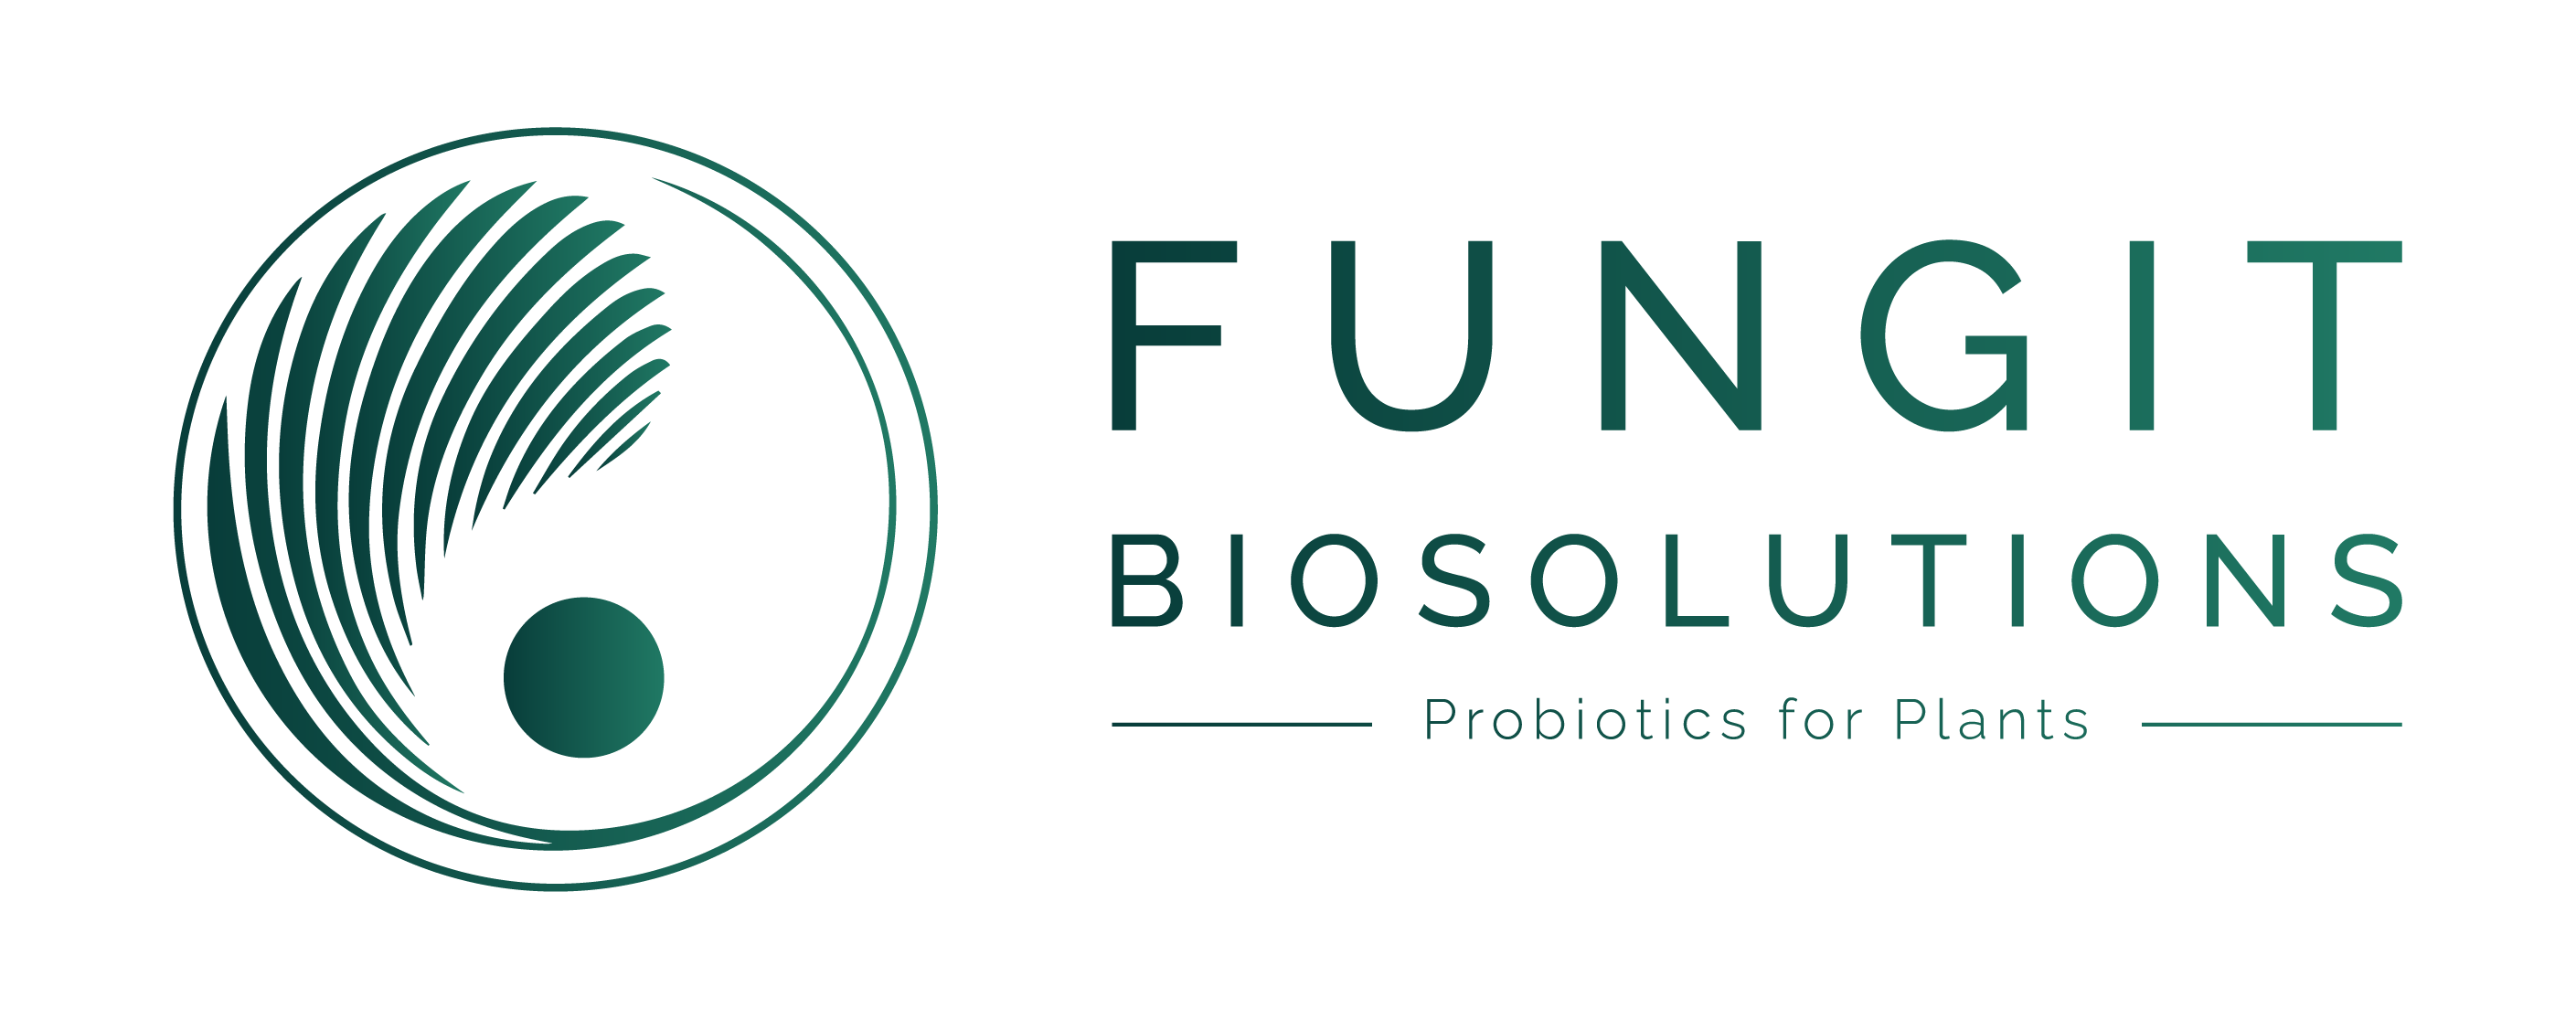 Fungit BioSolutions